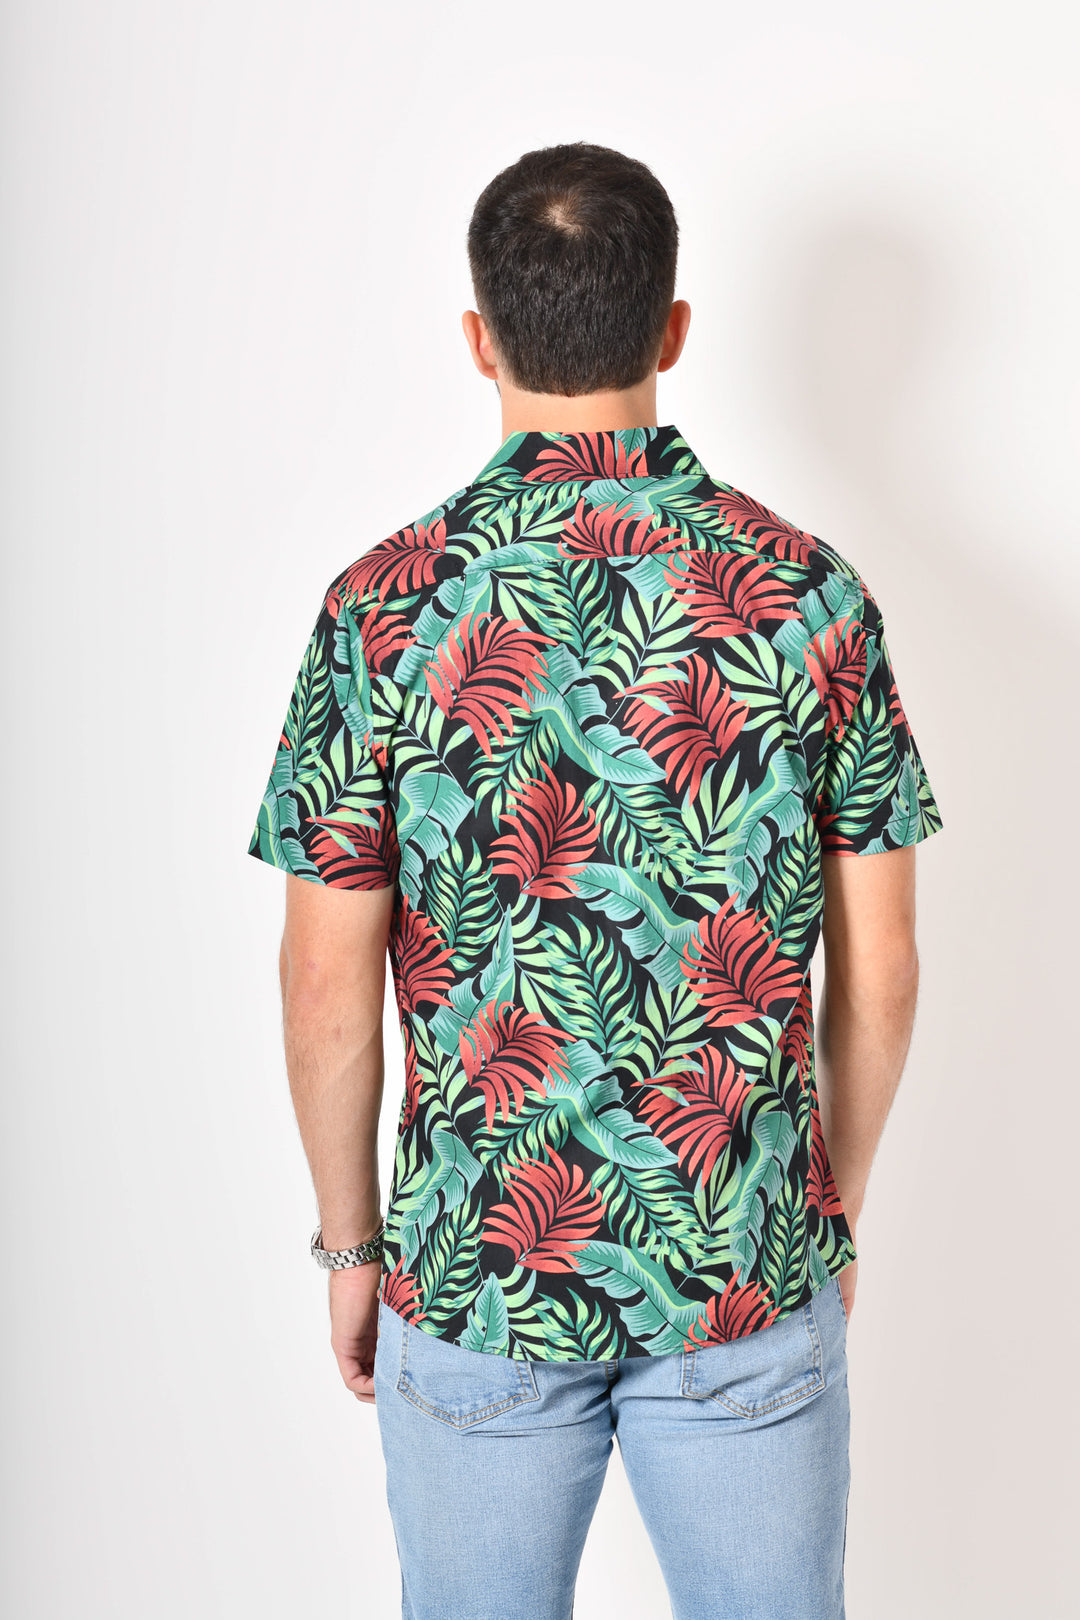 Camisa tropical de flores - verde roja